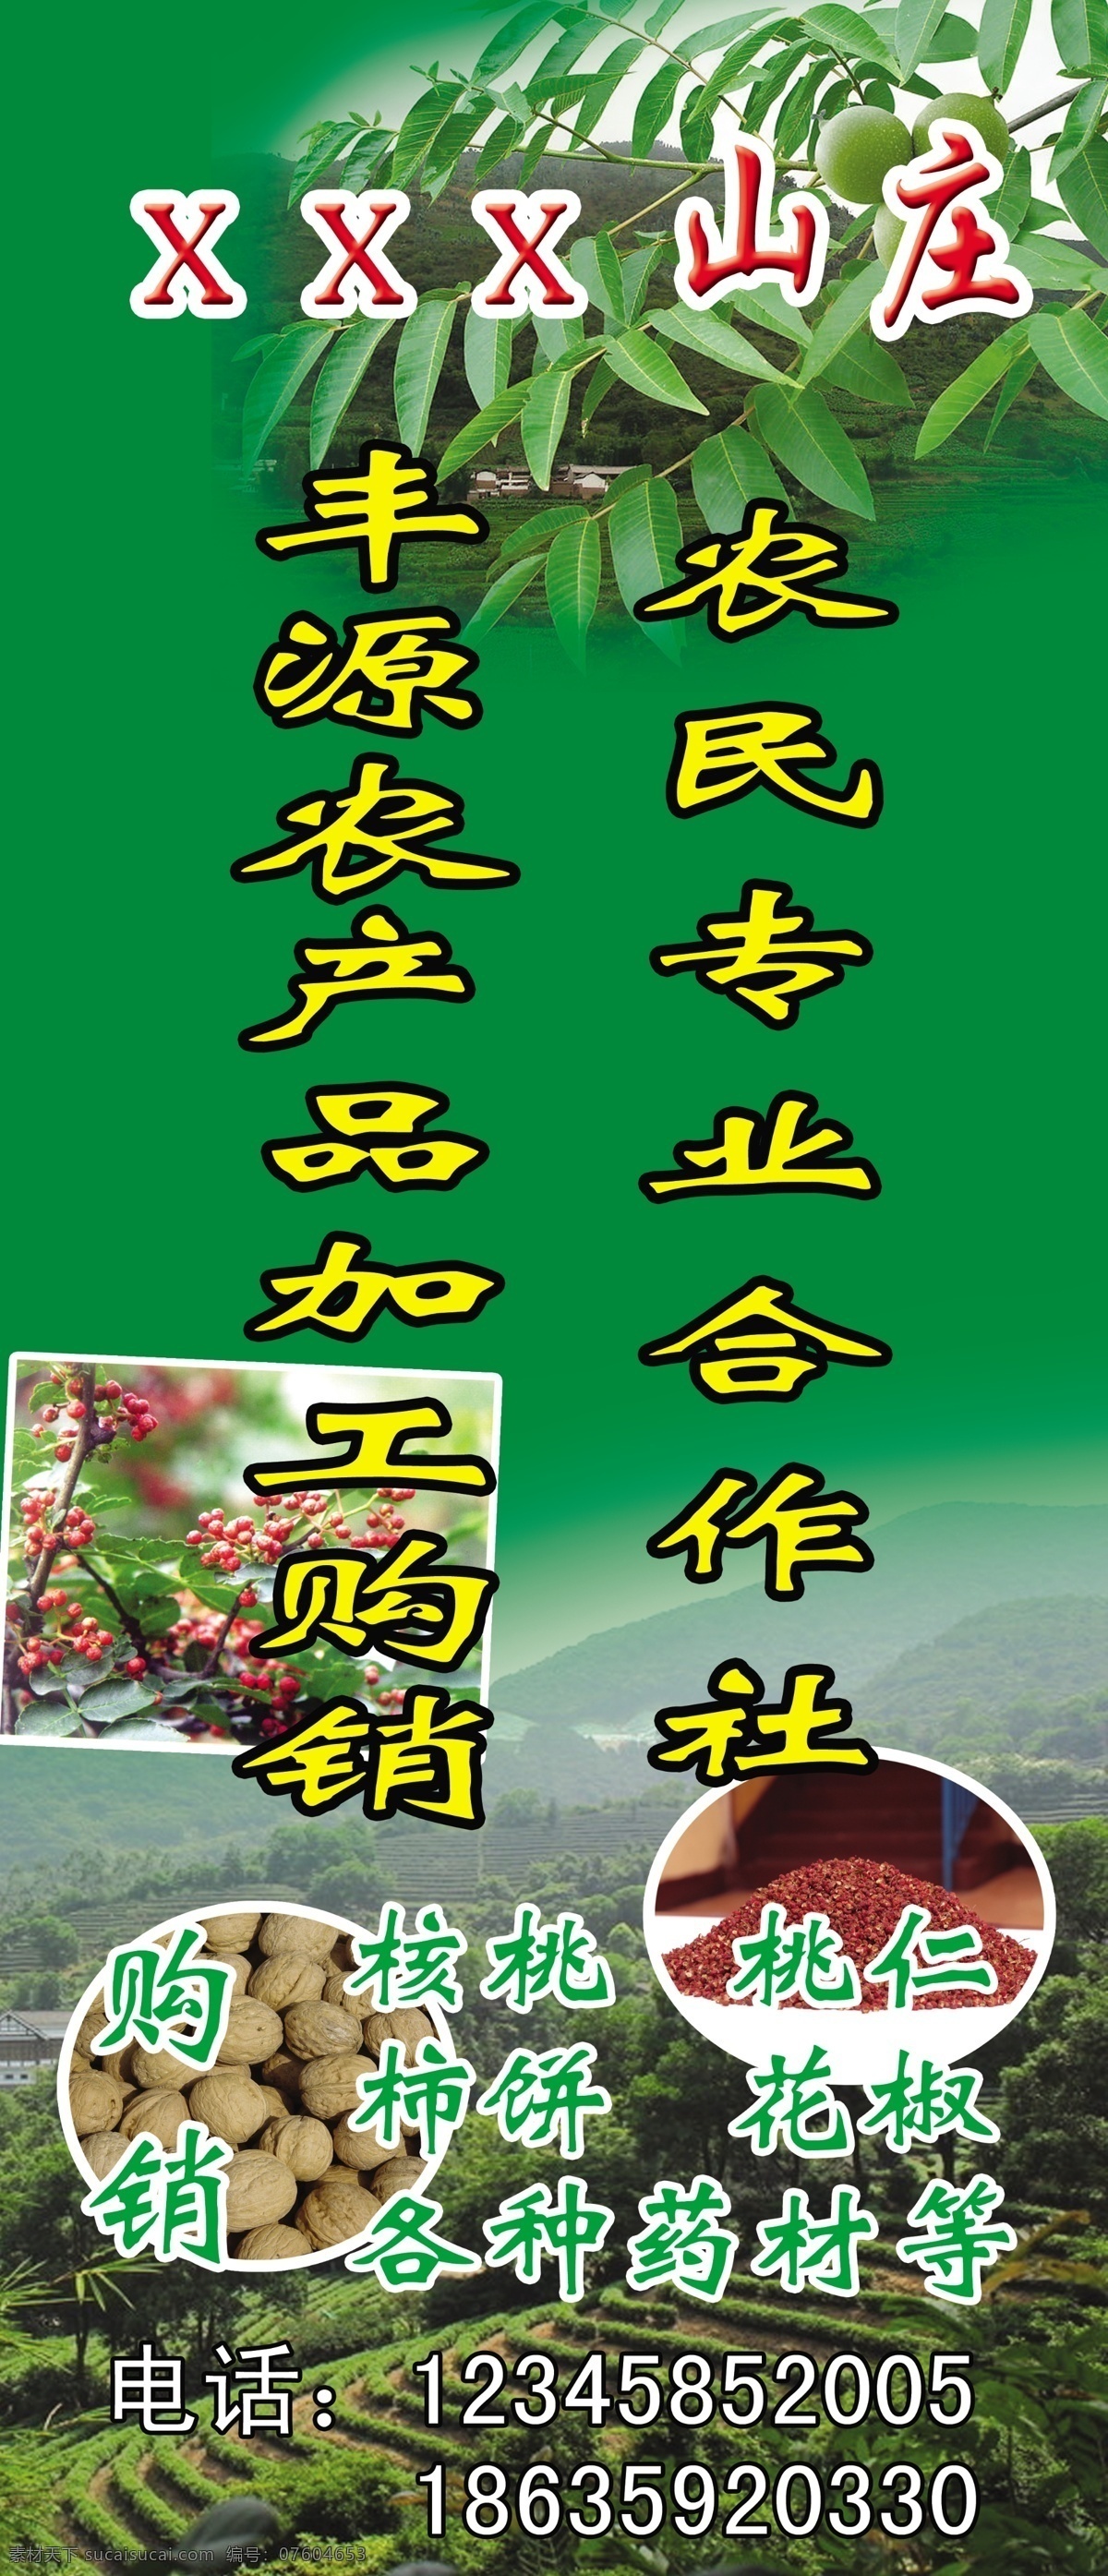 花椒 核桃 田地 农产品 核桃树 广告设计模板 源文件